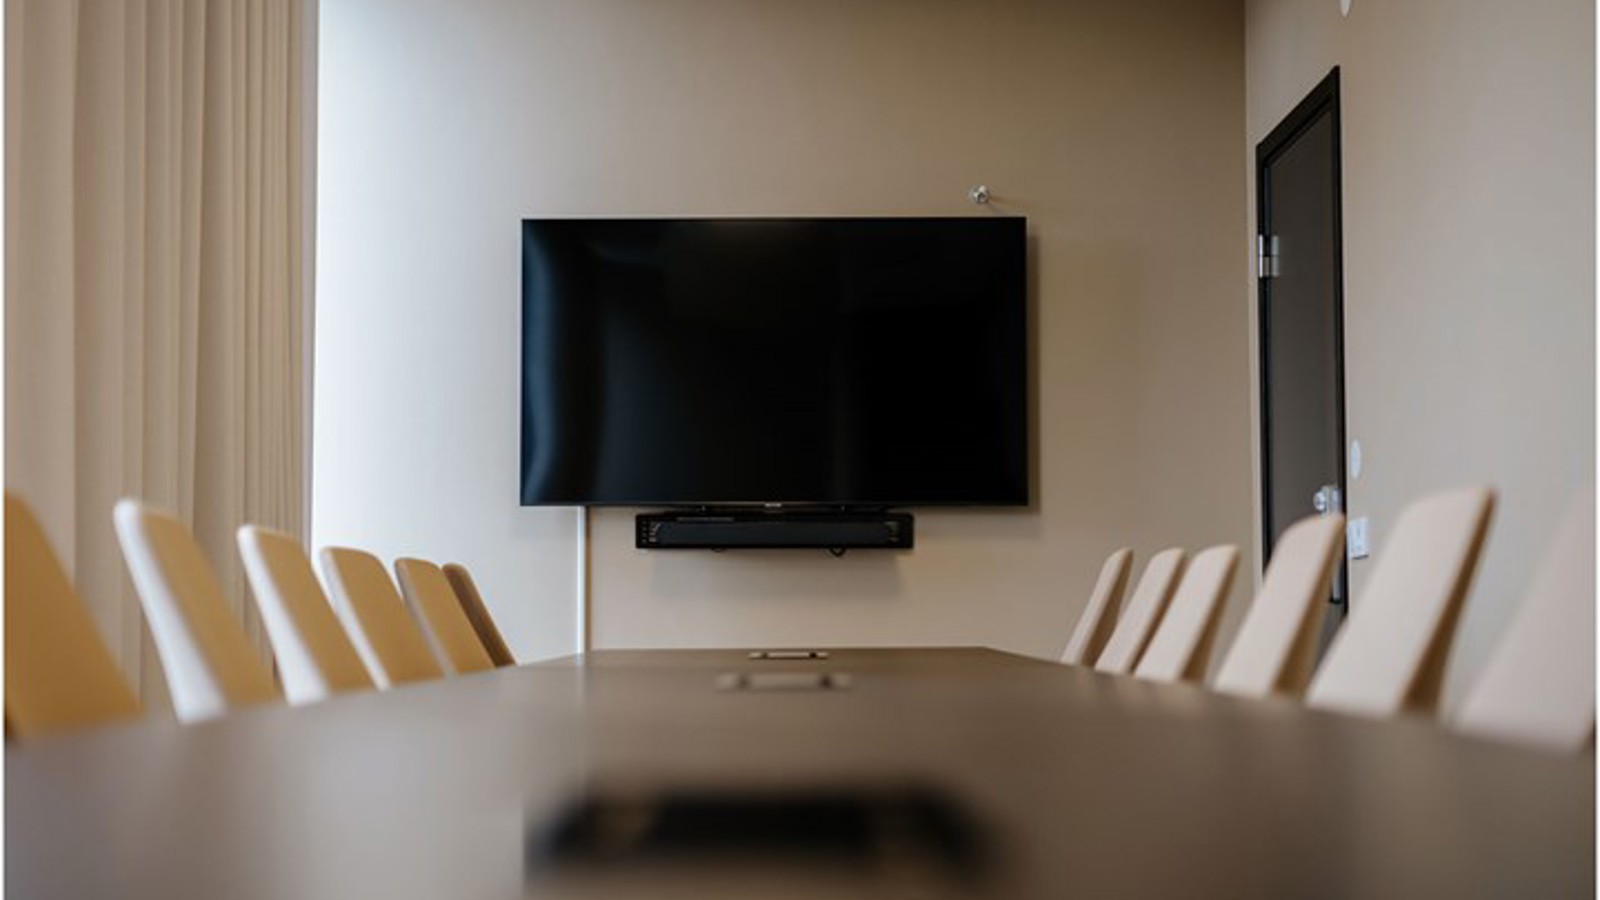 Konferensrum med styrelsesittning, brunt bord och tv-skärm